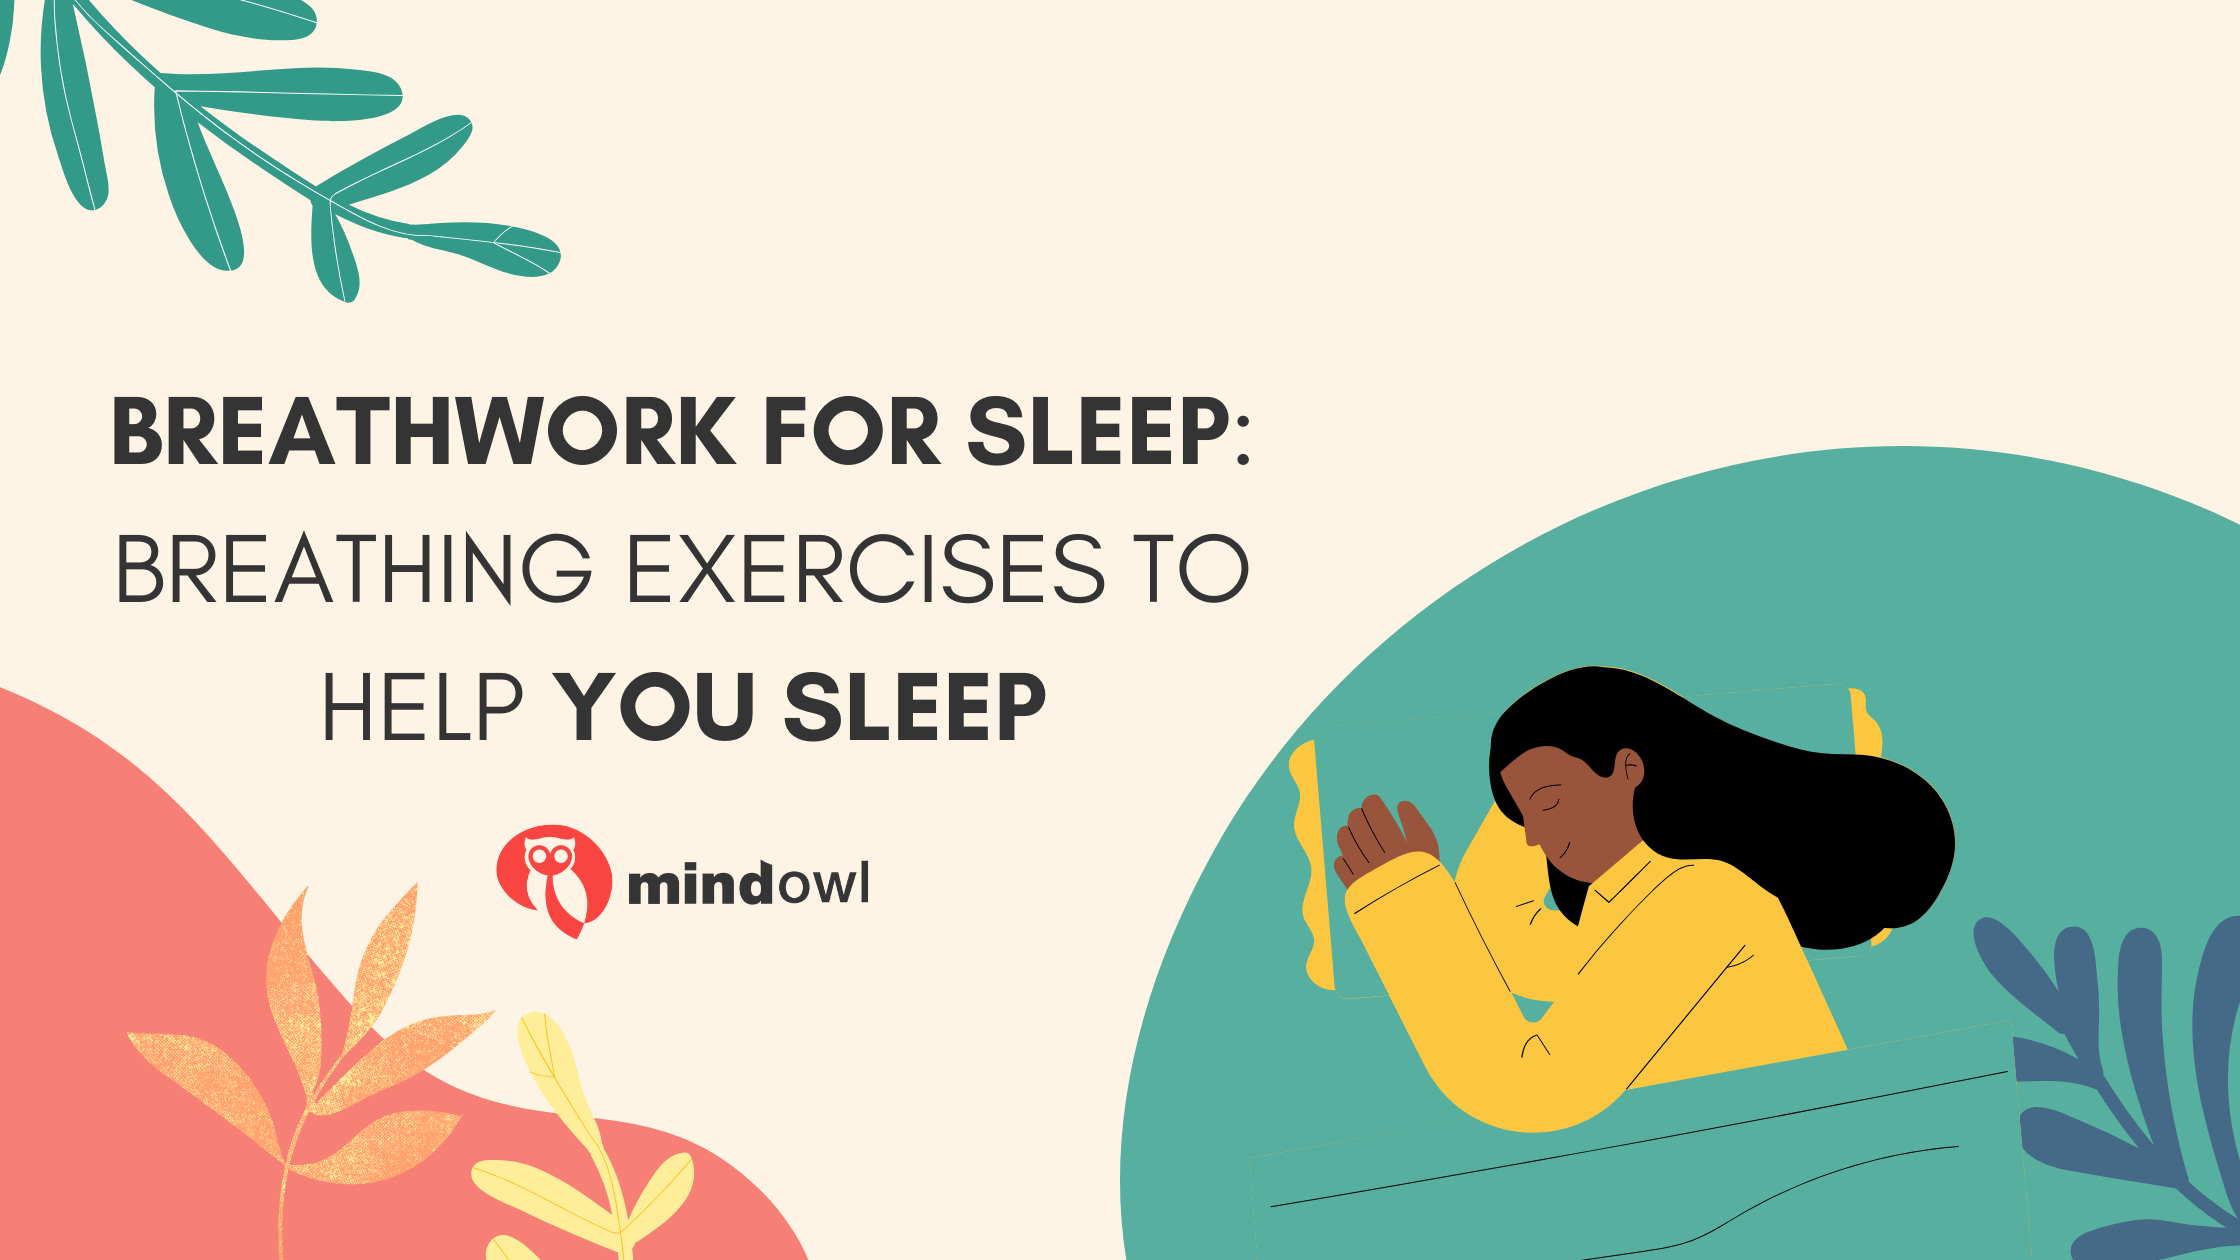 Breathwork for sleep: Breathing exercises to help you sleep